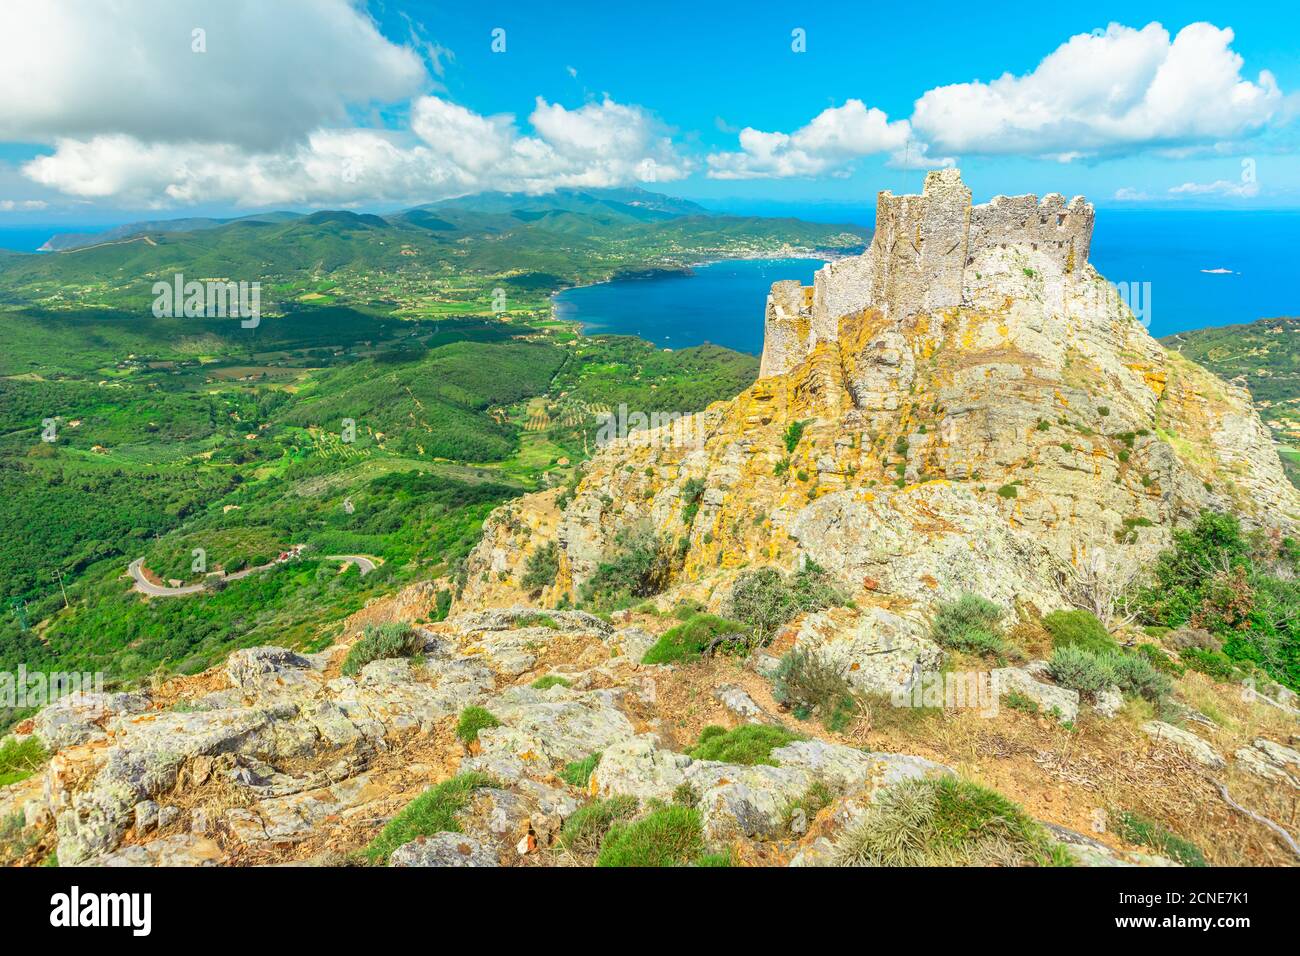 Vista iconica dalla cima del monte Elba del Castello di Volterraio sulla roccia a 394 m, la Fortezza di Volterraio domina il Golfo di Portoferraio Foto Stock